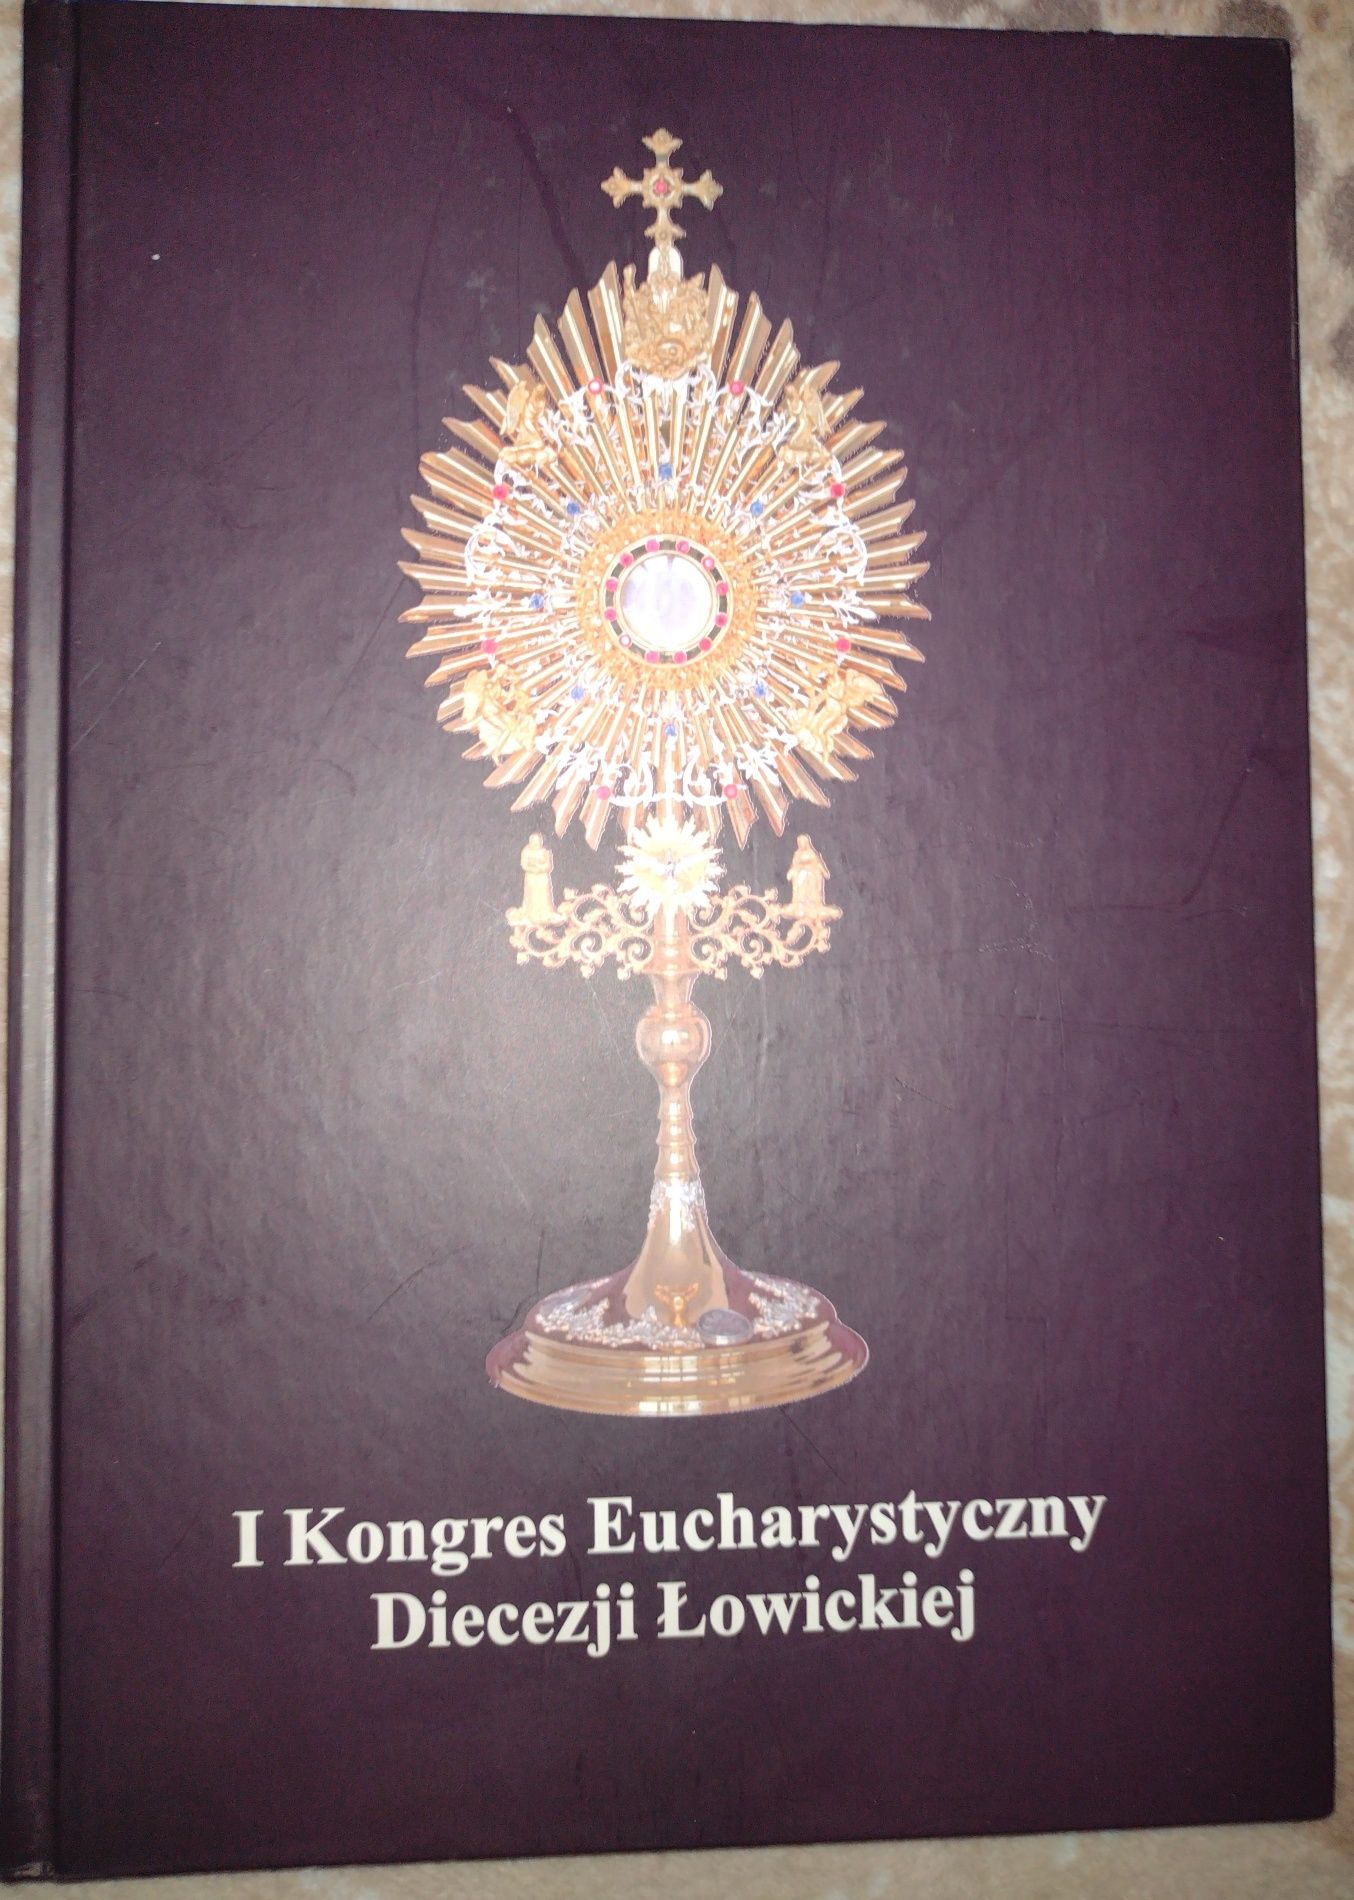 Sprzedam Książkę Album 1 Kongres Eucharystyczny Diecezji Łowickiej.
St